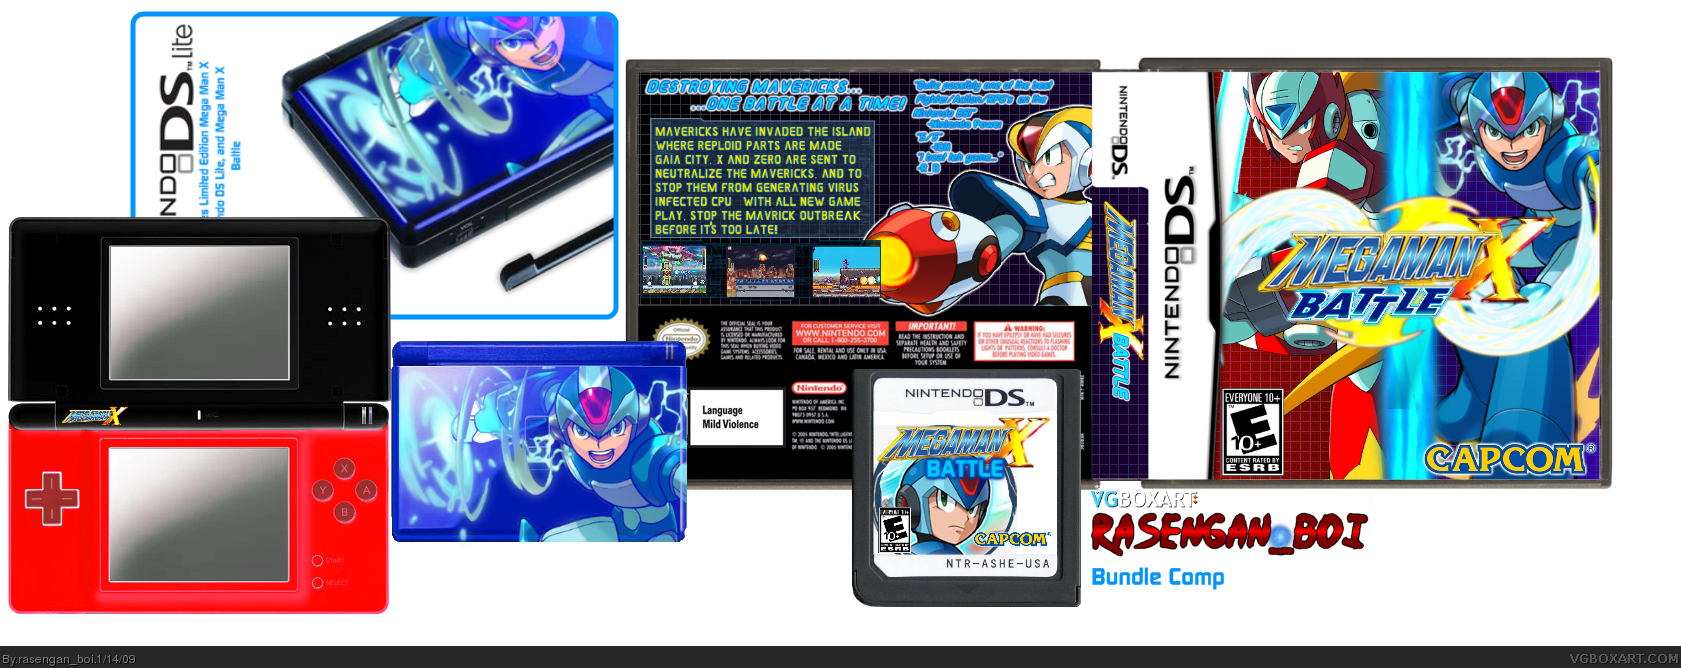 Megaman X: Battle box cover